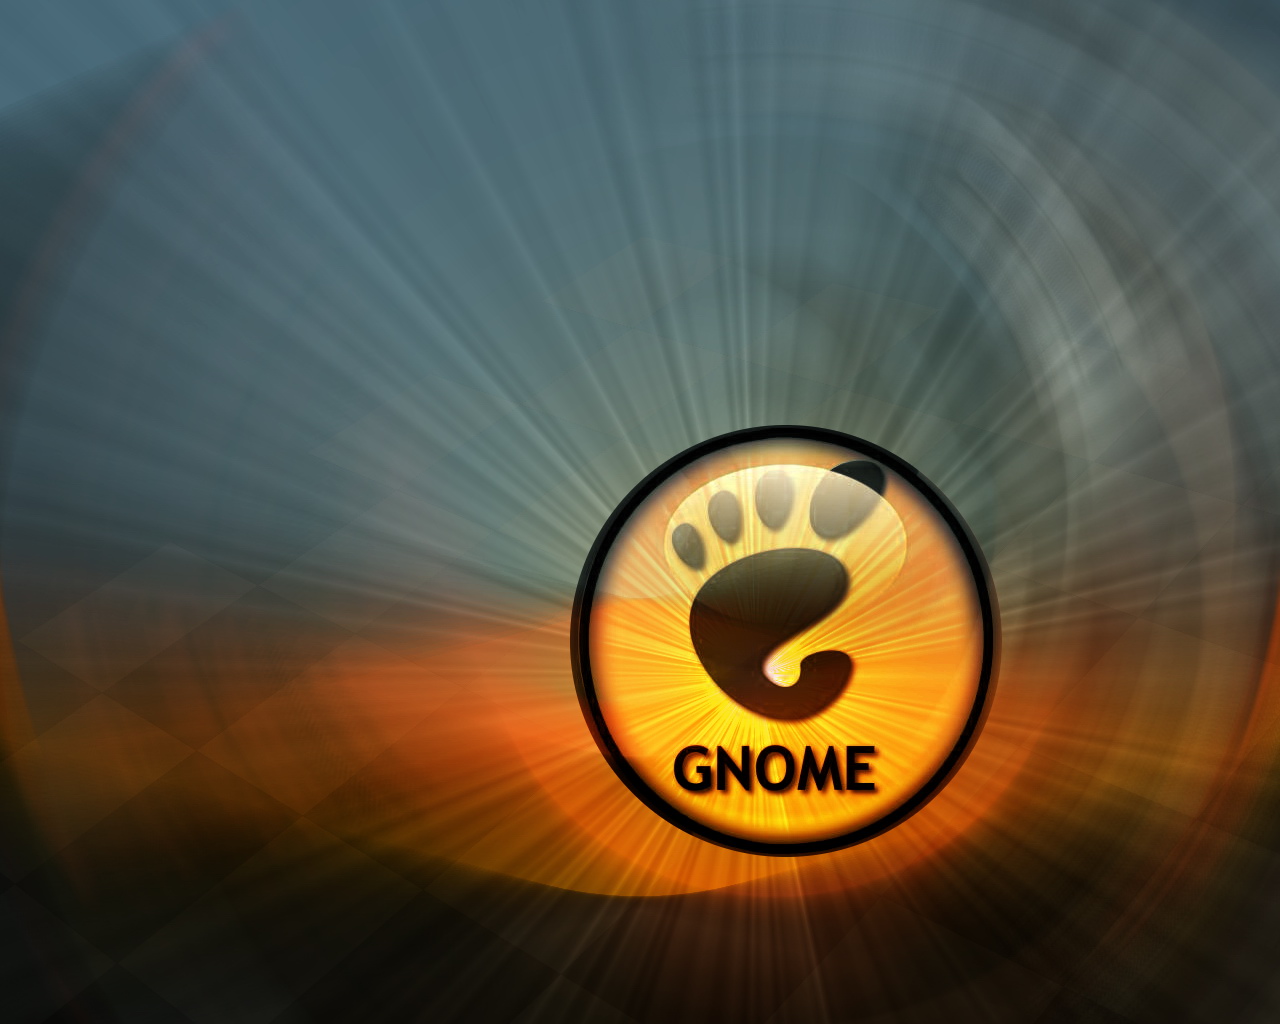 壁纸1280x10241280Gnome 1 6壁纸 Gnome 1280Gnome 第一辑壁纸 Gnome 1280Gnome 第一辑图片 Gnome 1280Gnome 第一辑素材 系统壁纸 系统图库 系统图片素材桌面壁纸